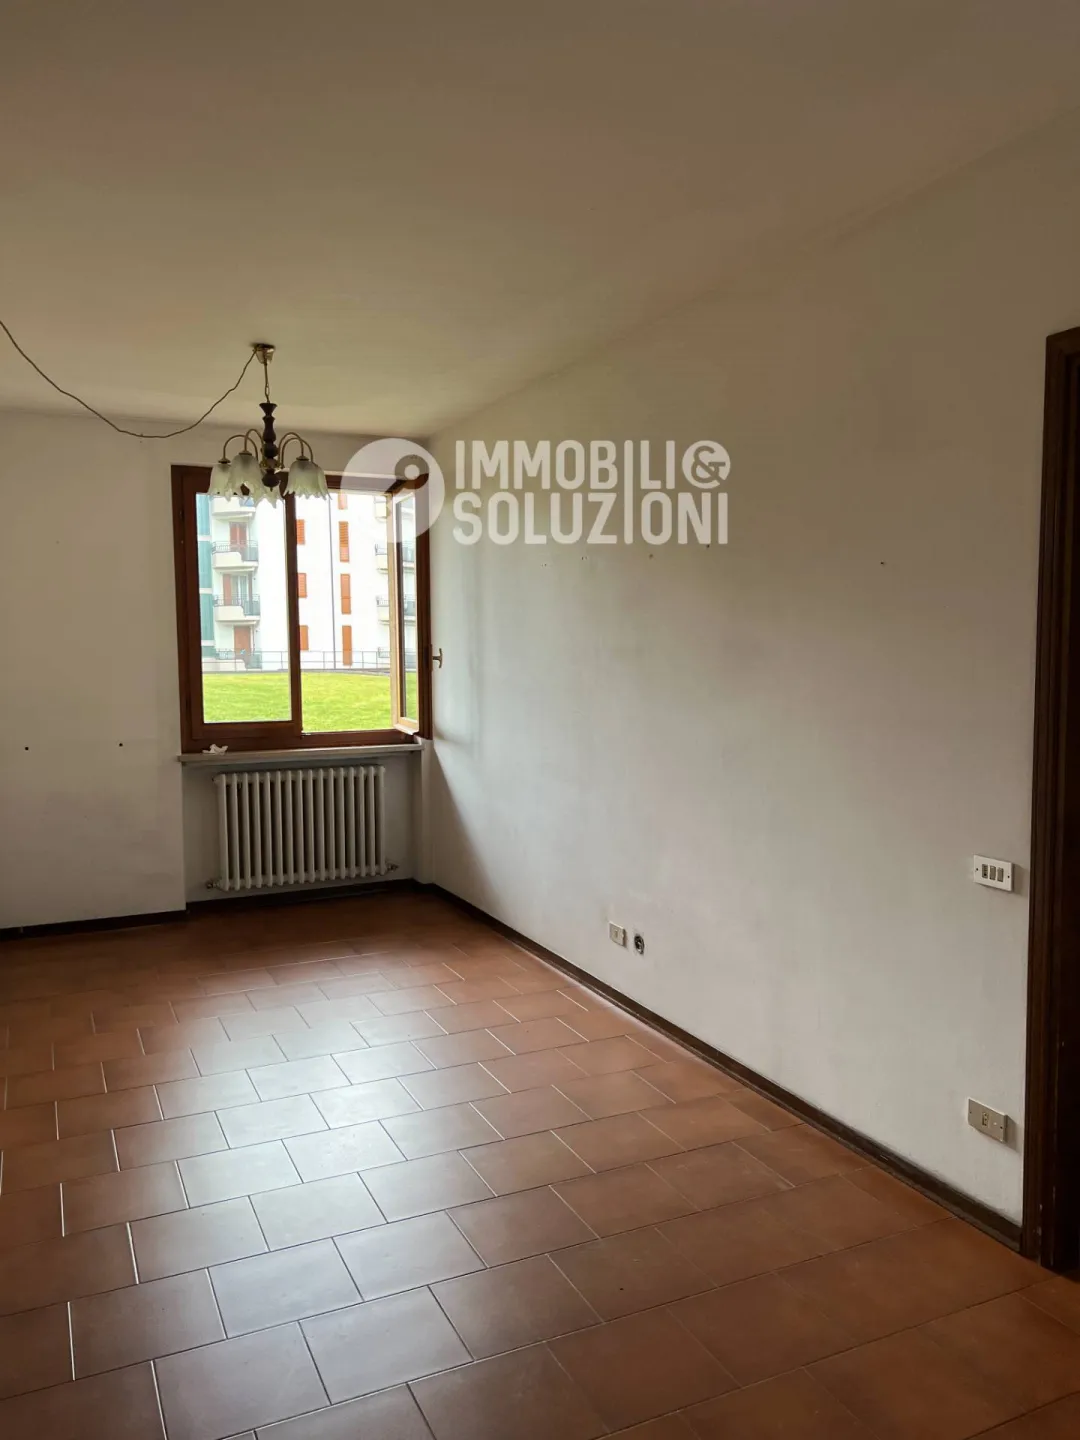 Immagine per Appartamento in vendita a Pontirolo Nuovo via Matteotti